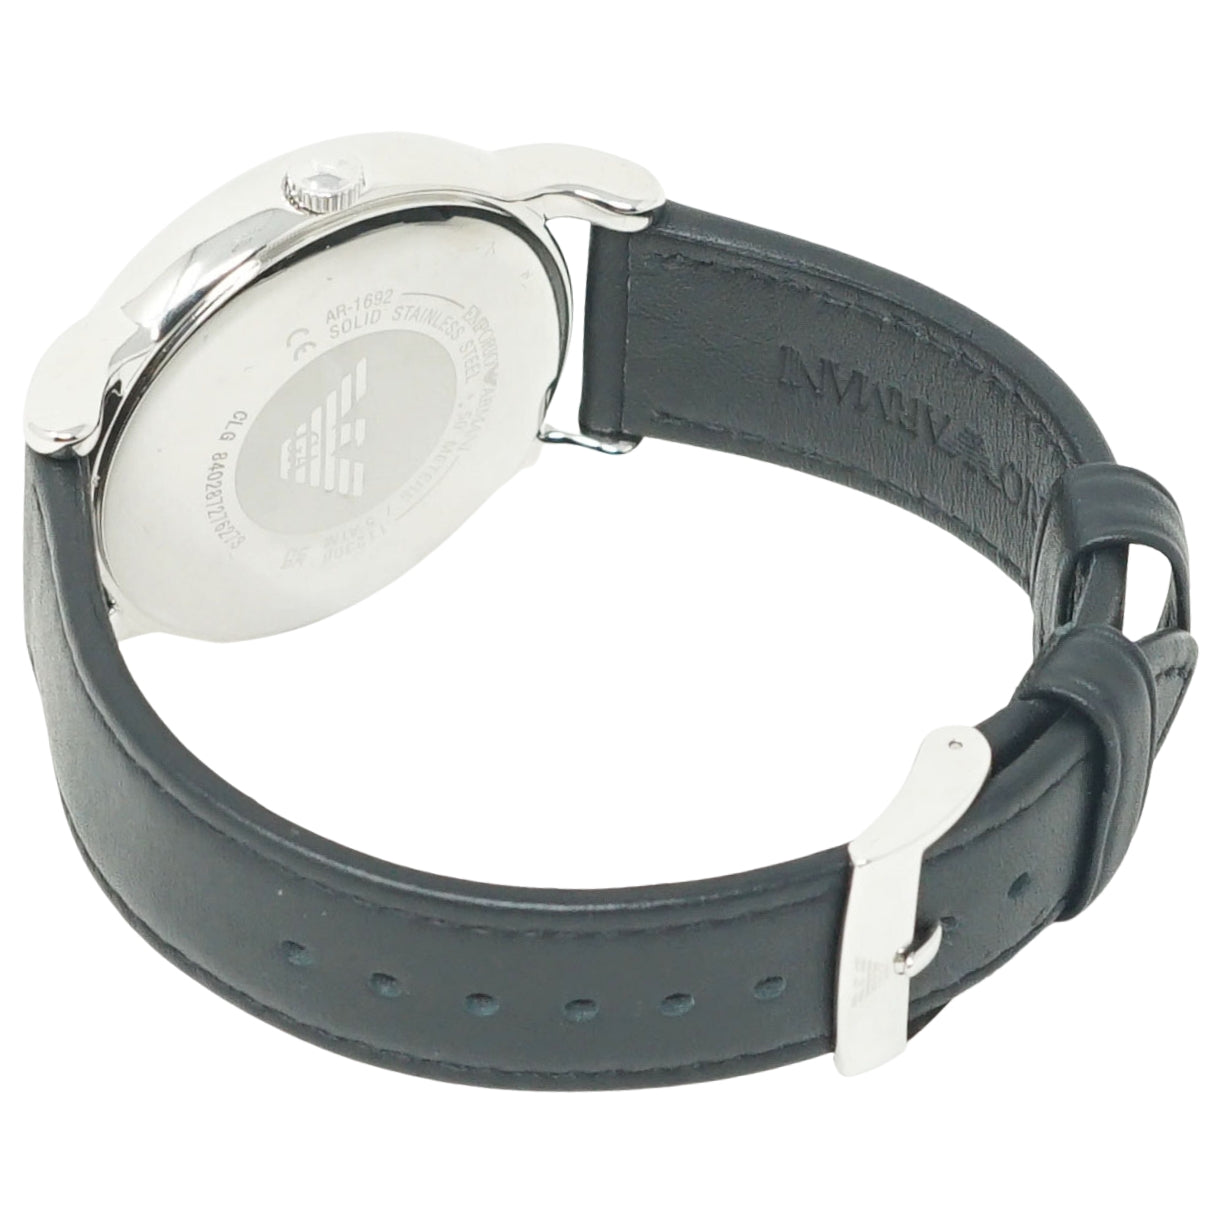 Emporio Armani Black Leather Strap Watch